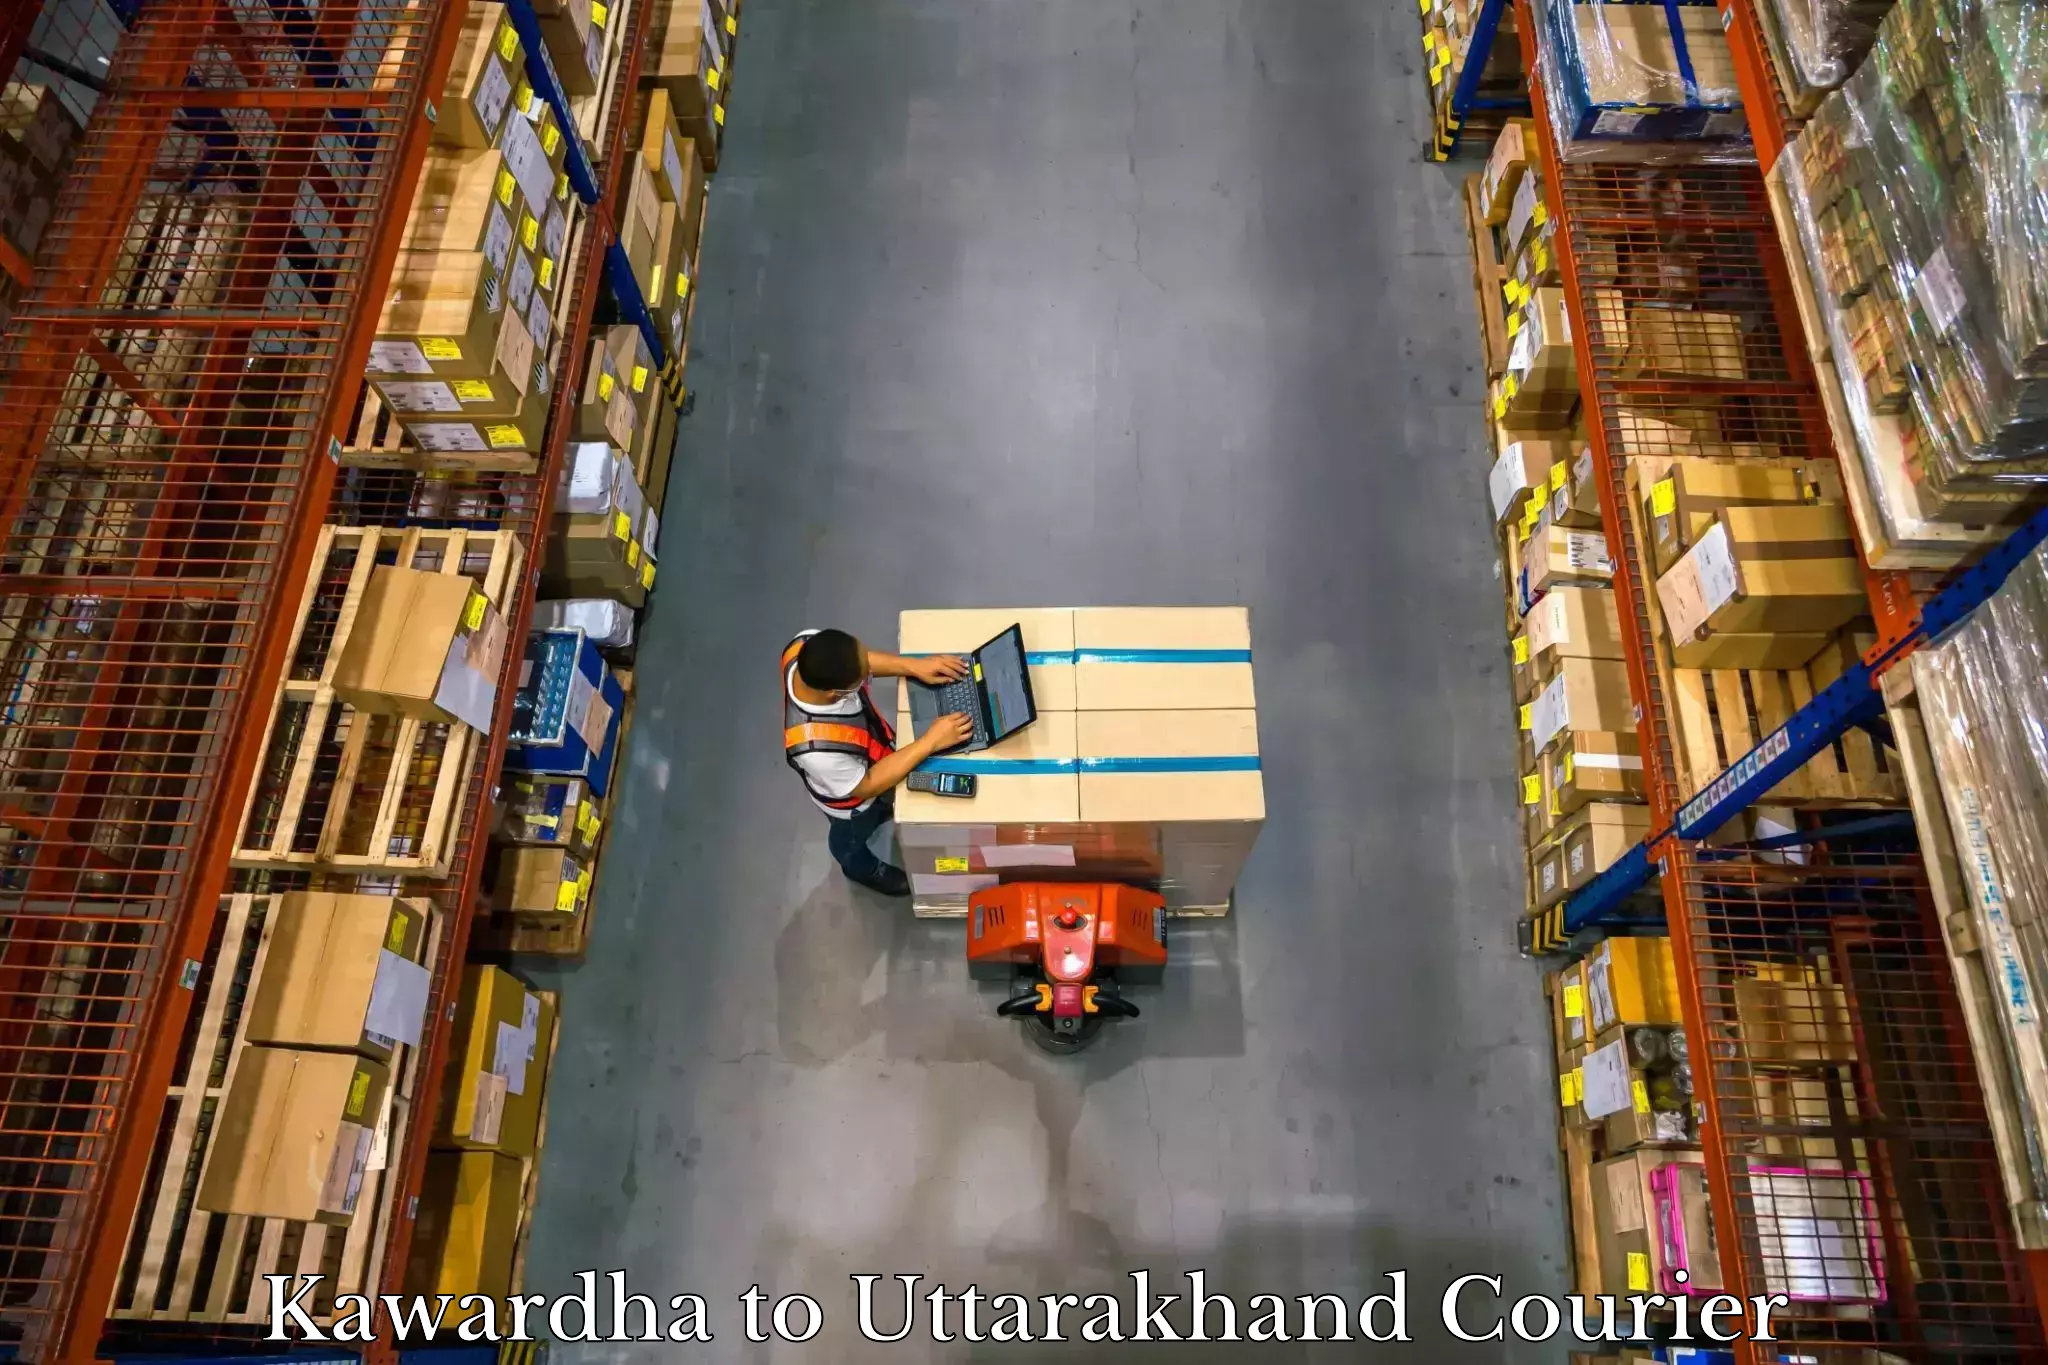 Luggage shipment processing Kawardha to Nainital